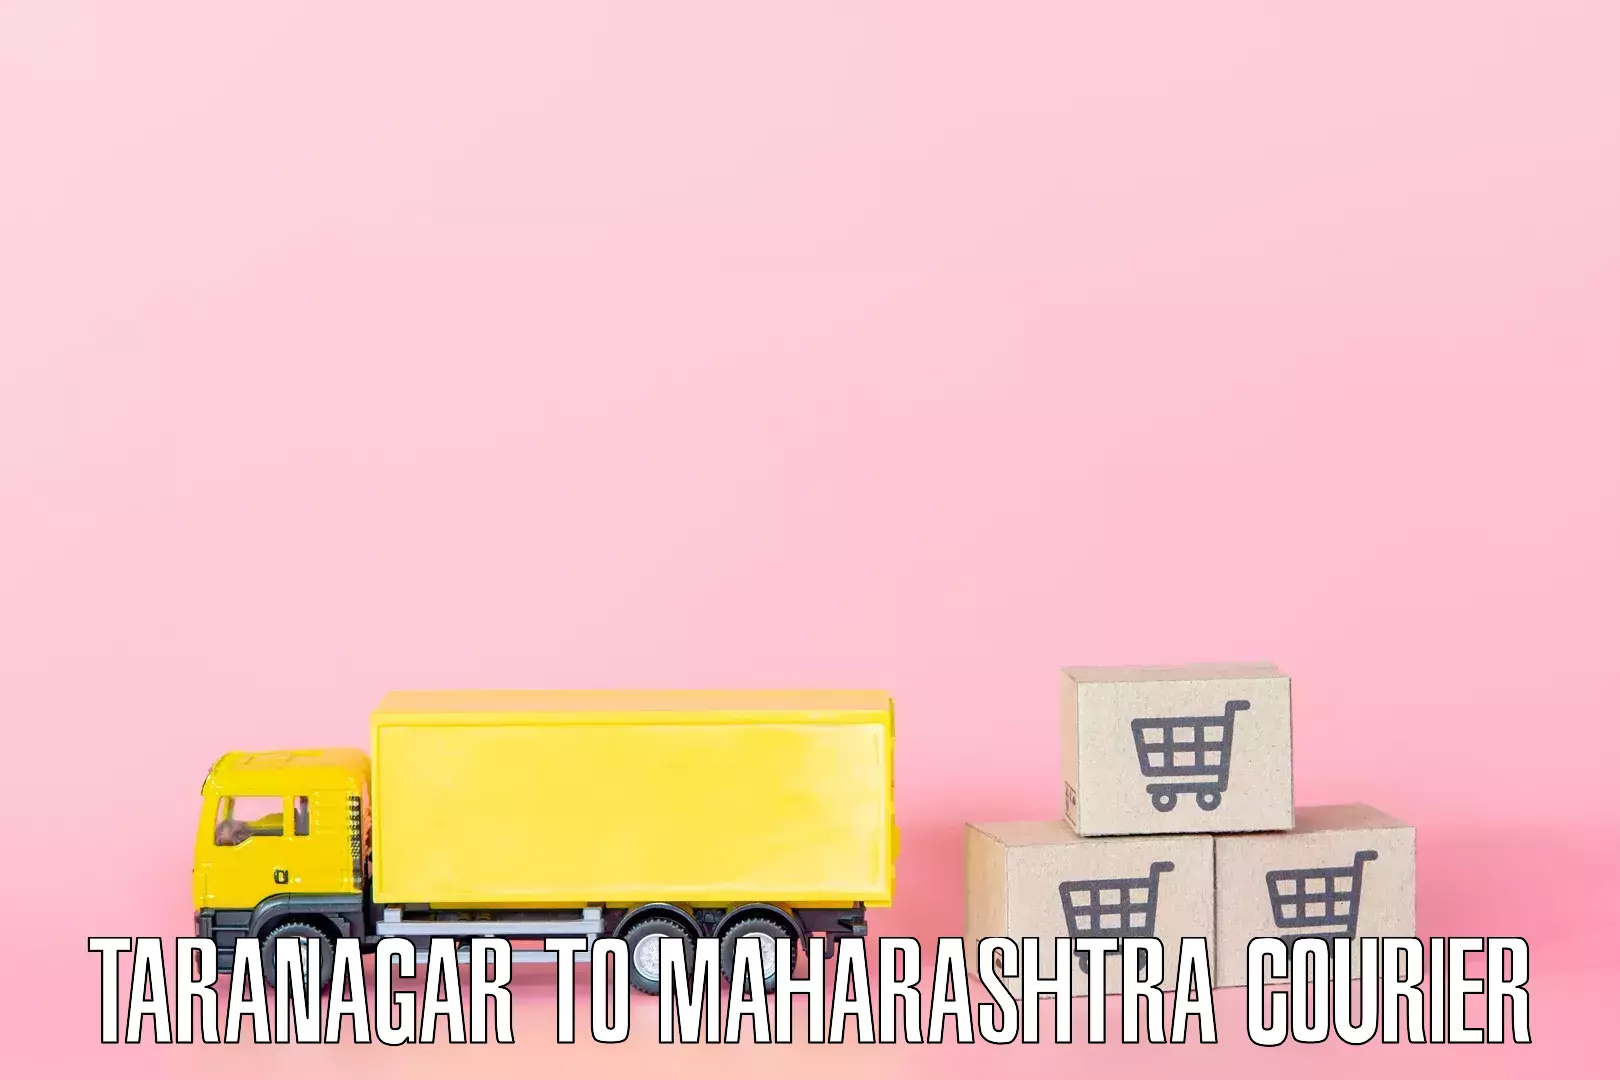 Quick household moving Taranagar to Maharashtra